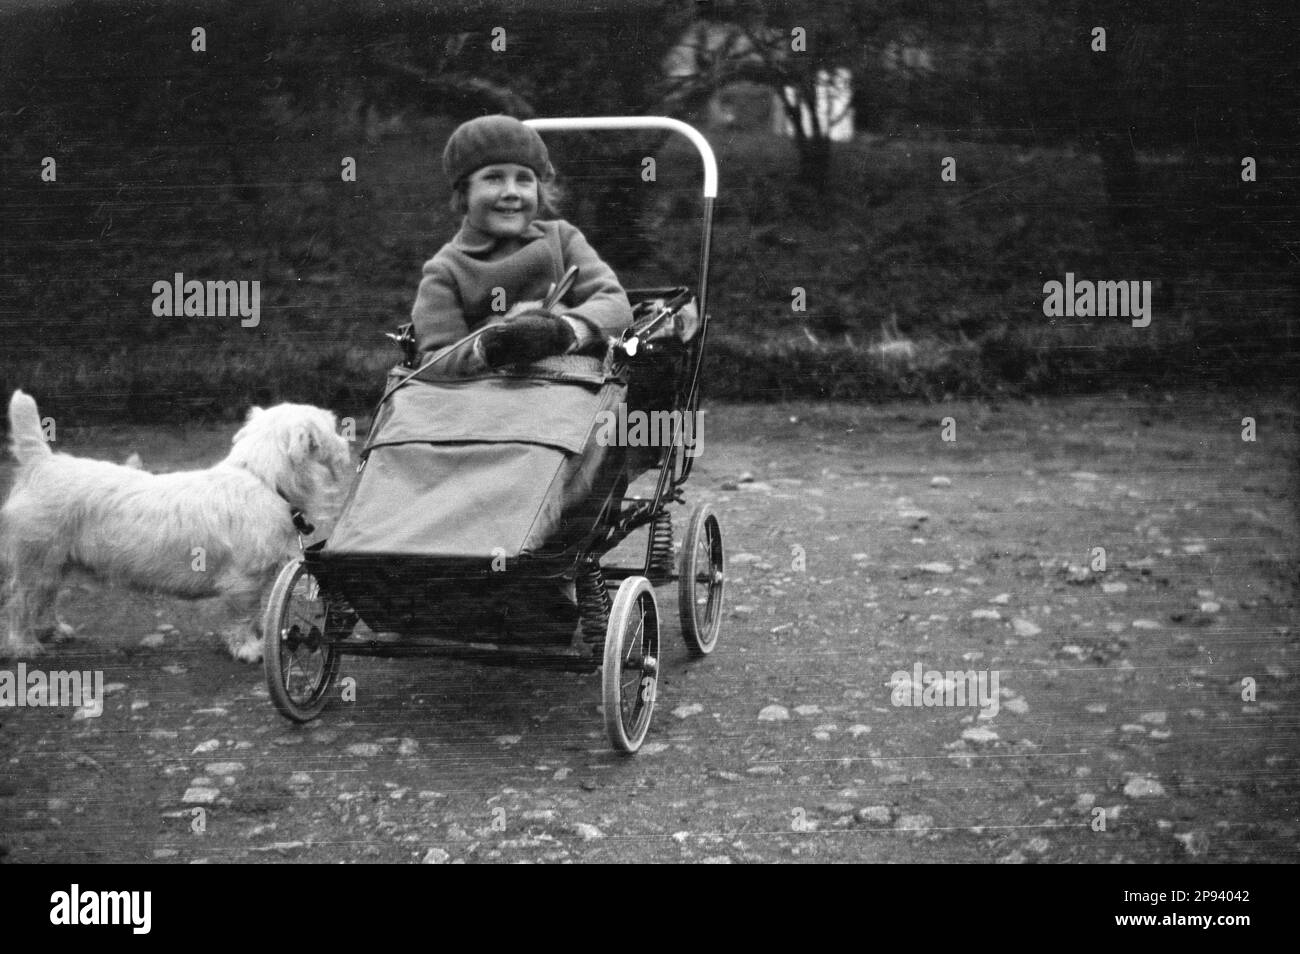 Etwa 1930er, historisch, draußen auf einem holprigen Pfad, ein süßes junges Mädchen, in Mantel und Baskenmütze, in einem Stahlrahmen mit Federung, Kinderwagen, eine Blei in der Hand, die an ihrem Hund, einem kleinen scottie, in England, festhält. Stockfoto